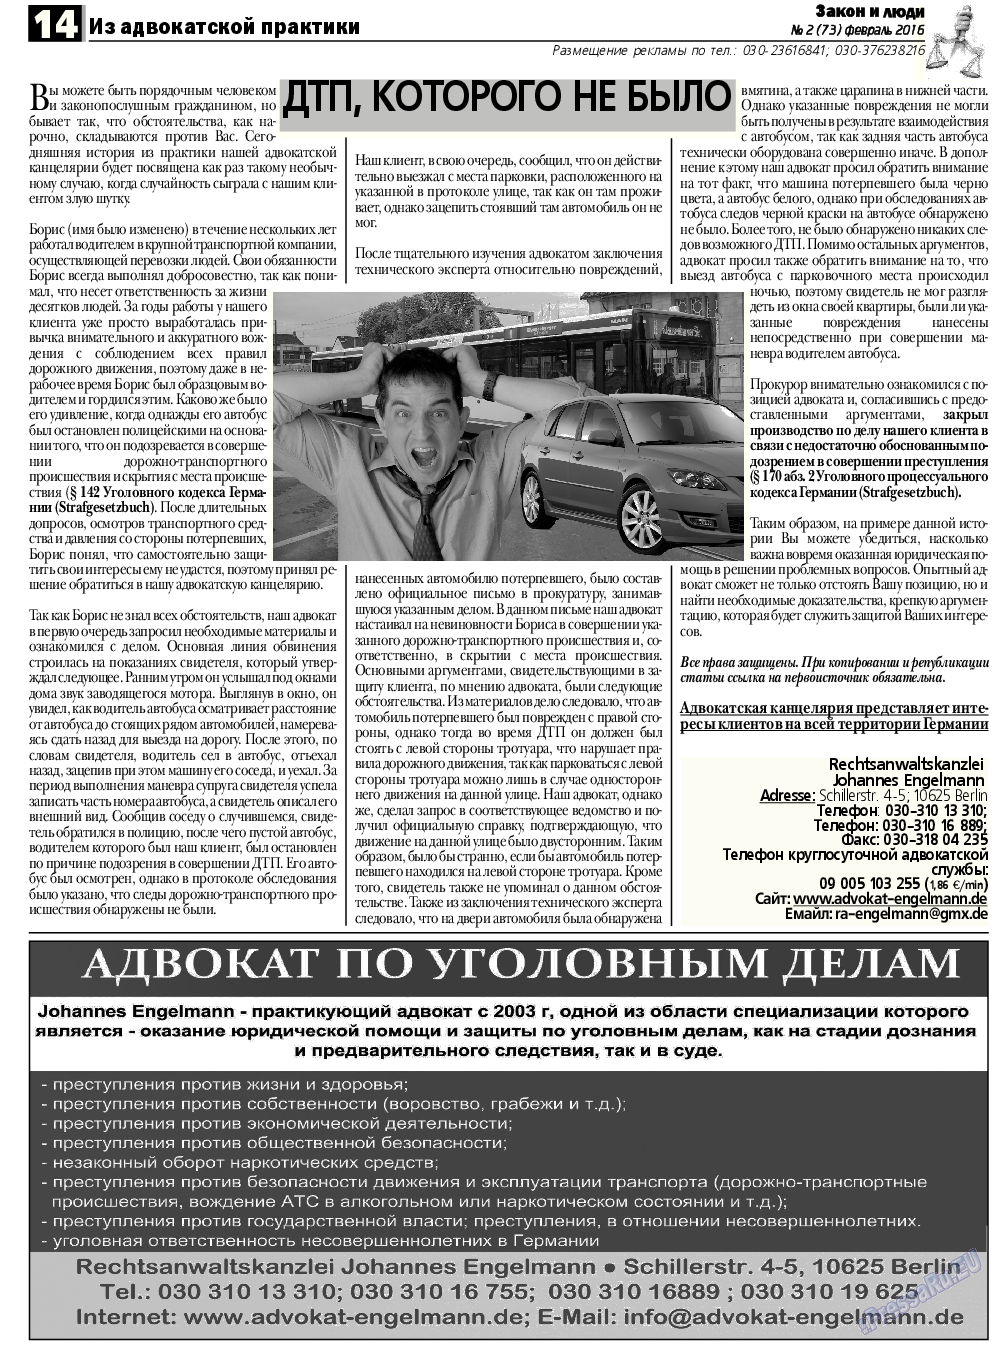 Закон и люди, газета. 2016 №2 стр.14